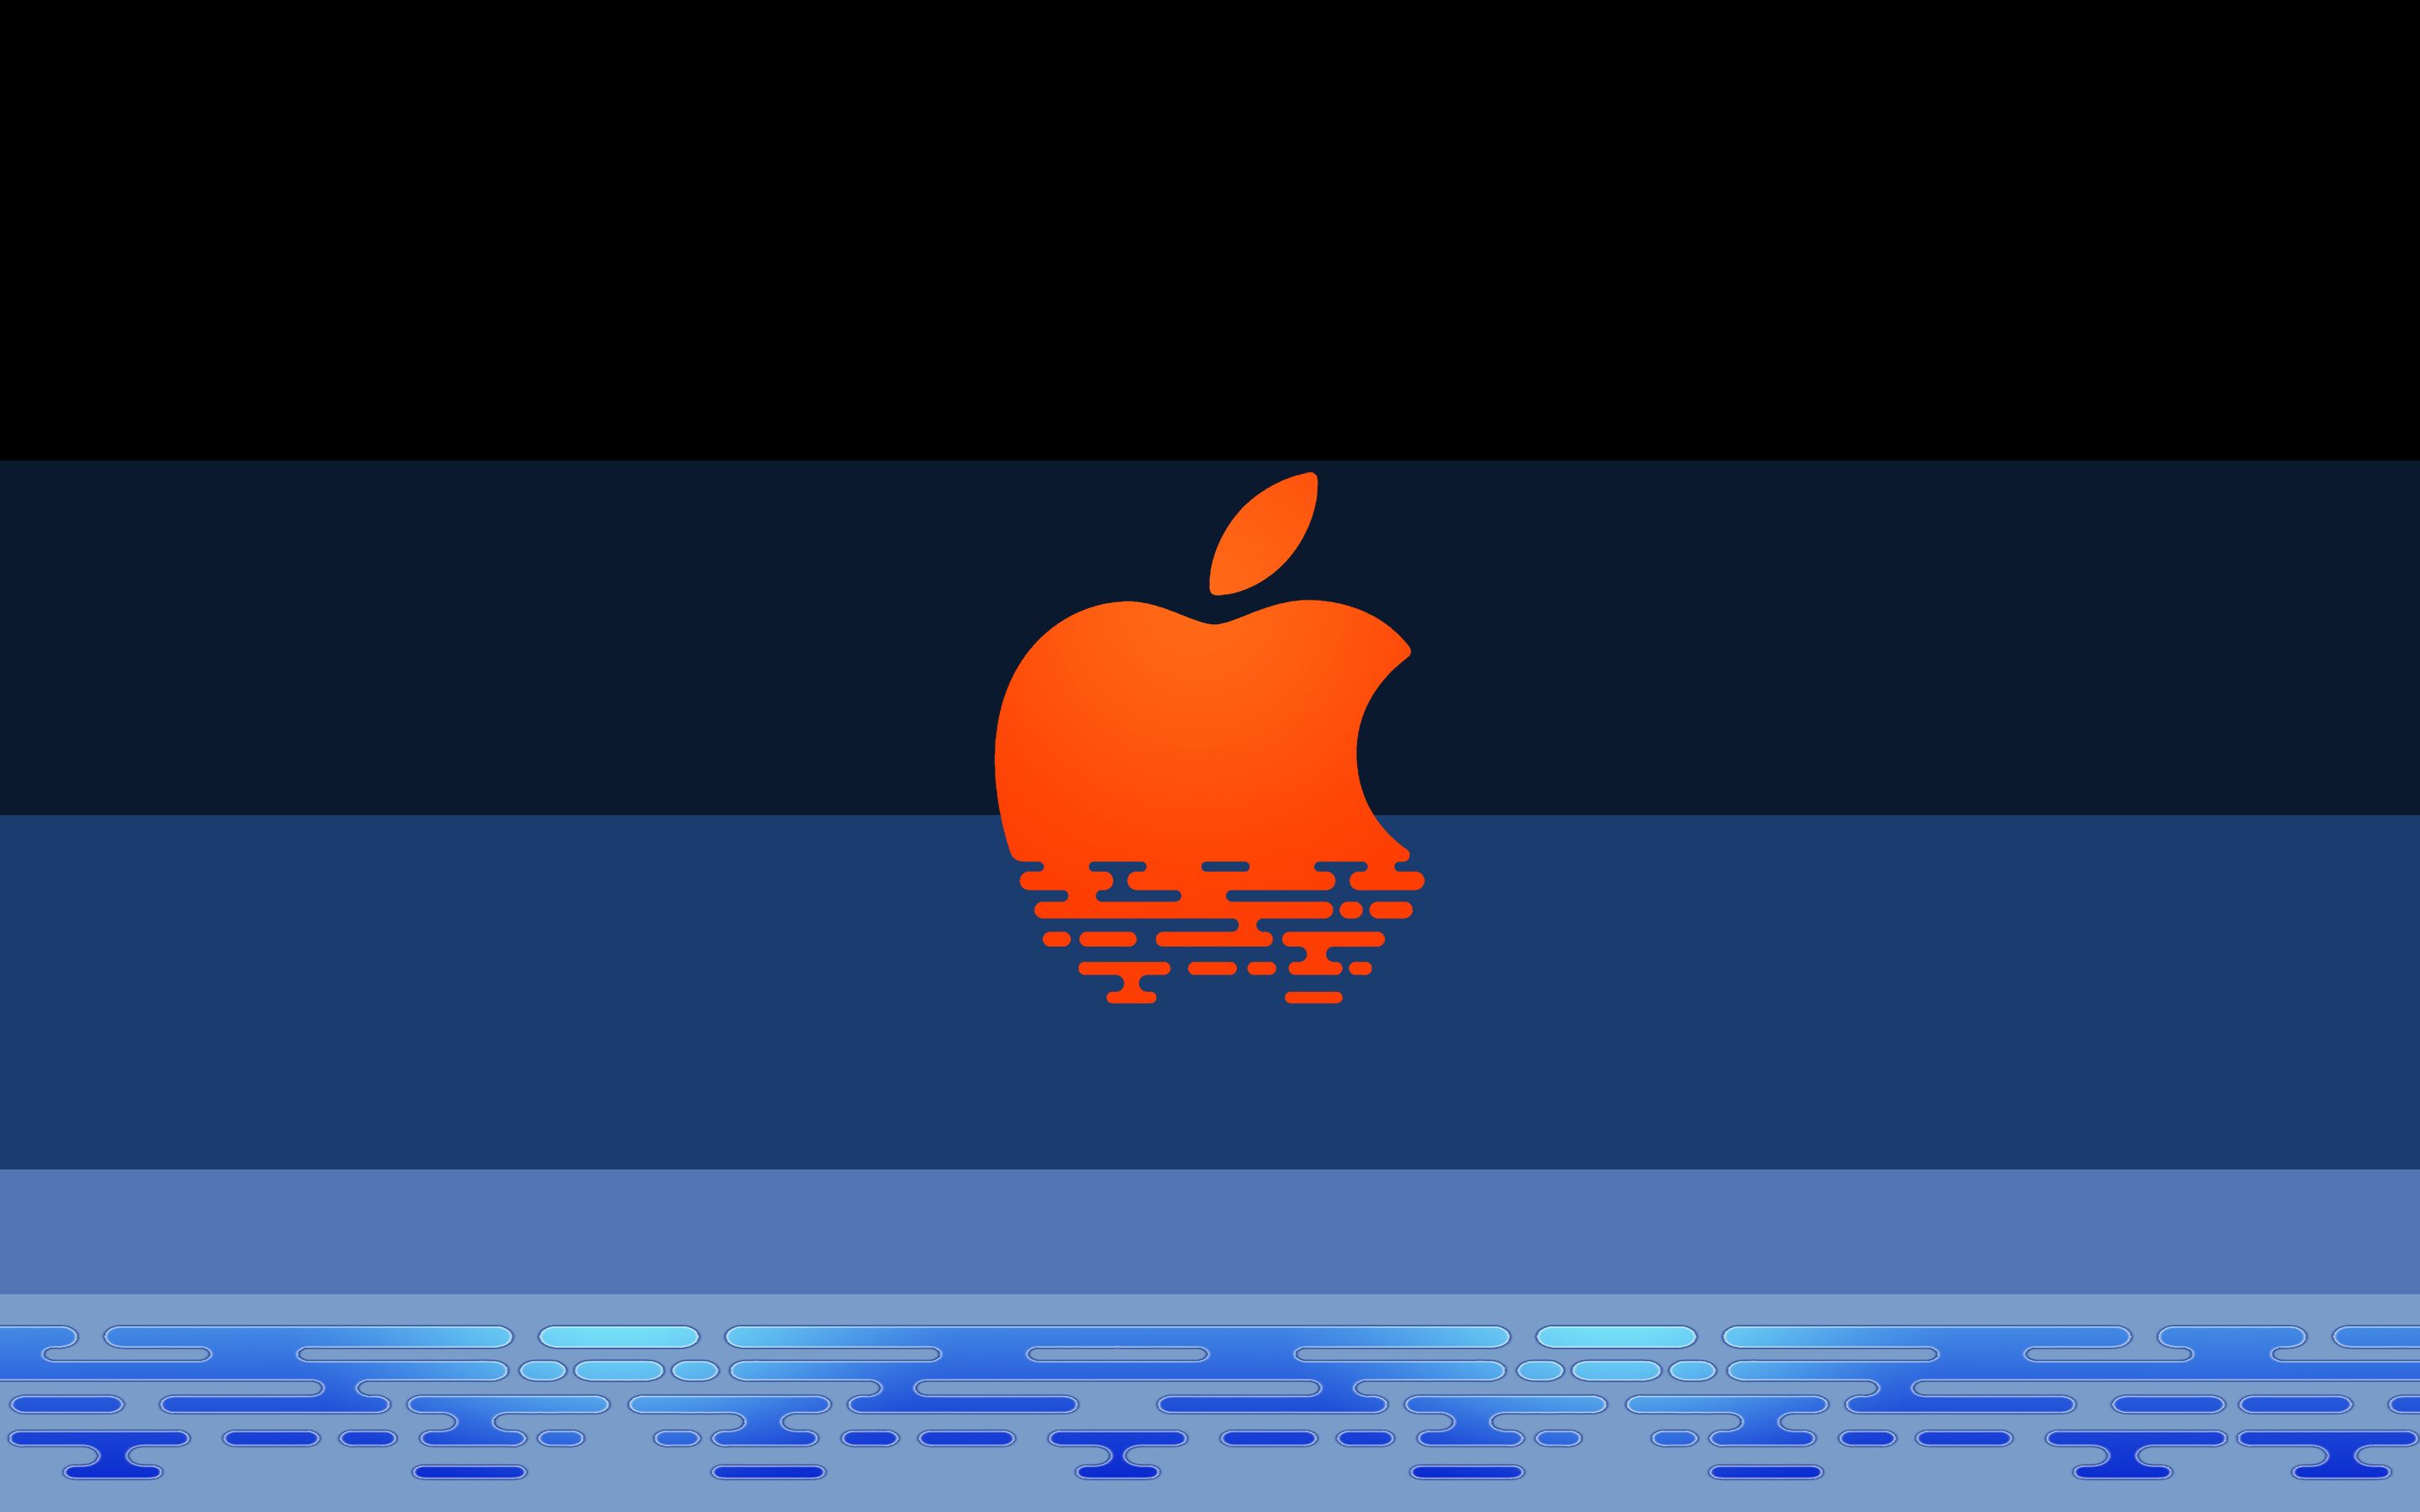 Descarga gratuita de fondo de pantalla para móvil de Manzana, Tecnología, Logo, Apple Inc.